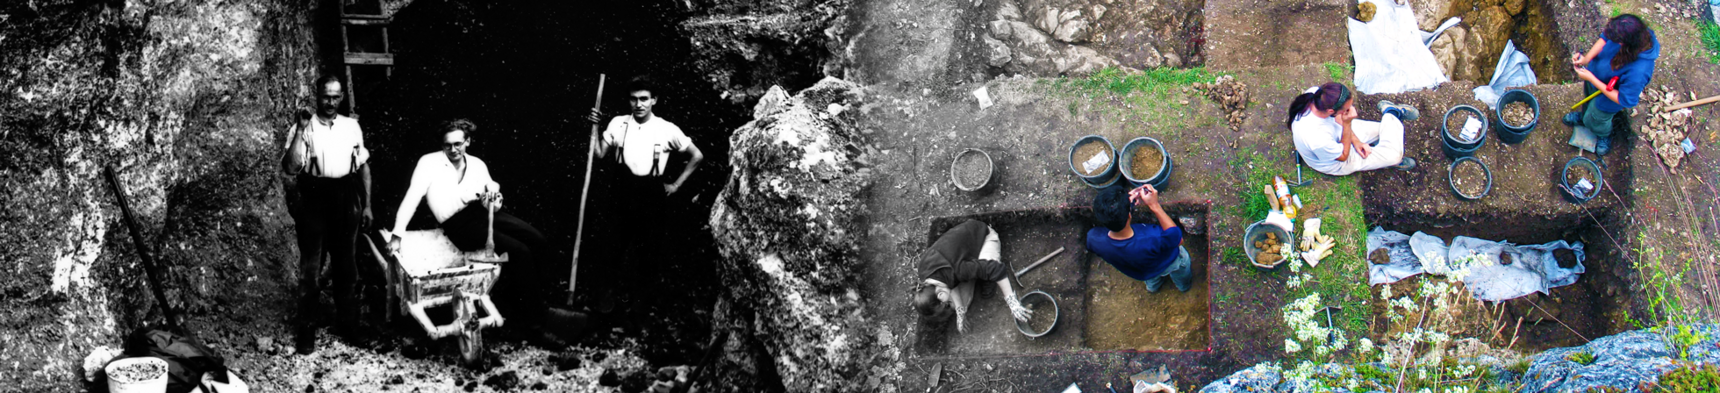 Ausgrabungen in der Vogelherdhöhle 1931 (links) und im Abraum der Altrabungen im Jahr 2008 (rechts).